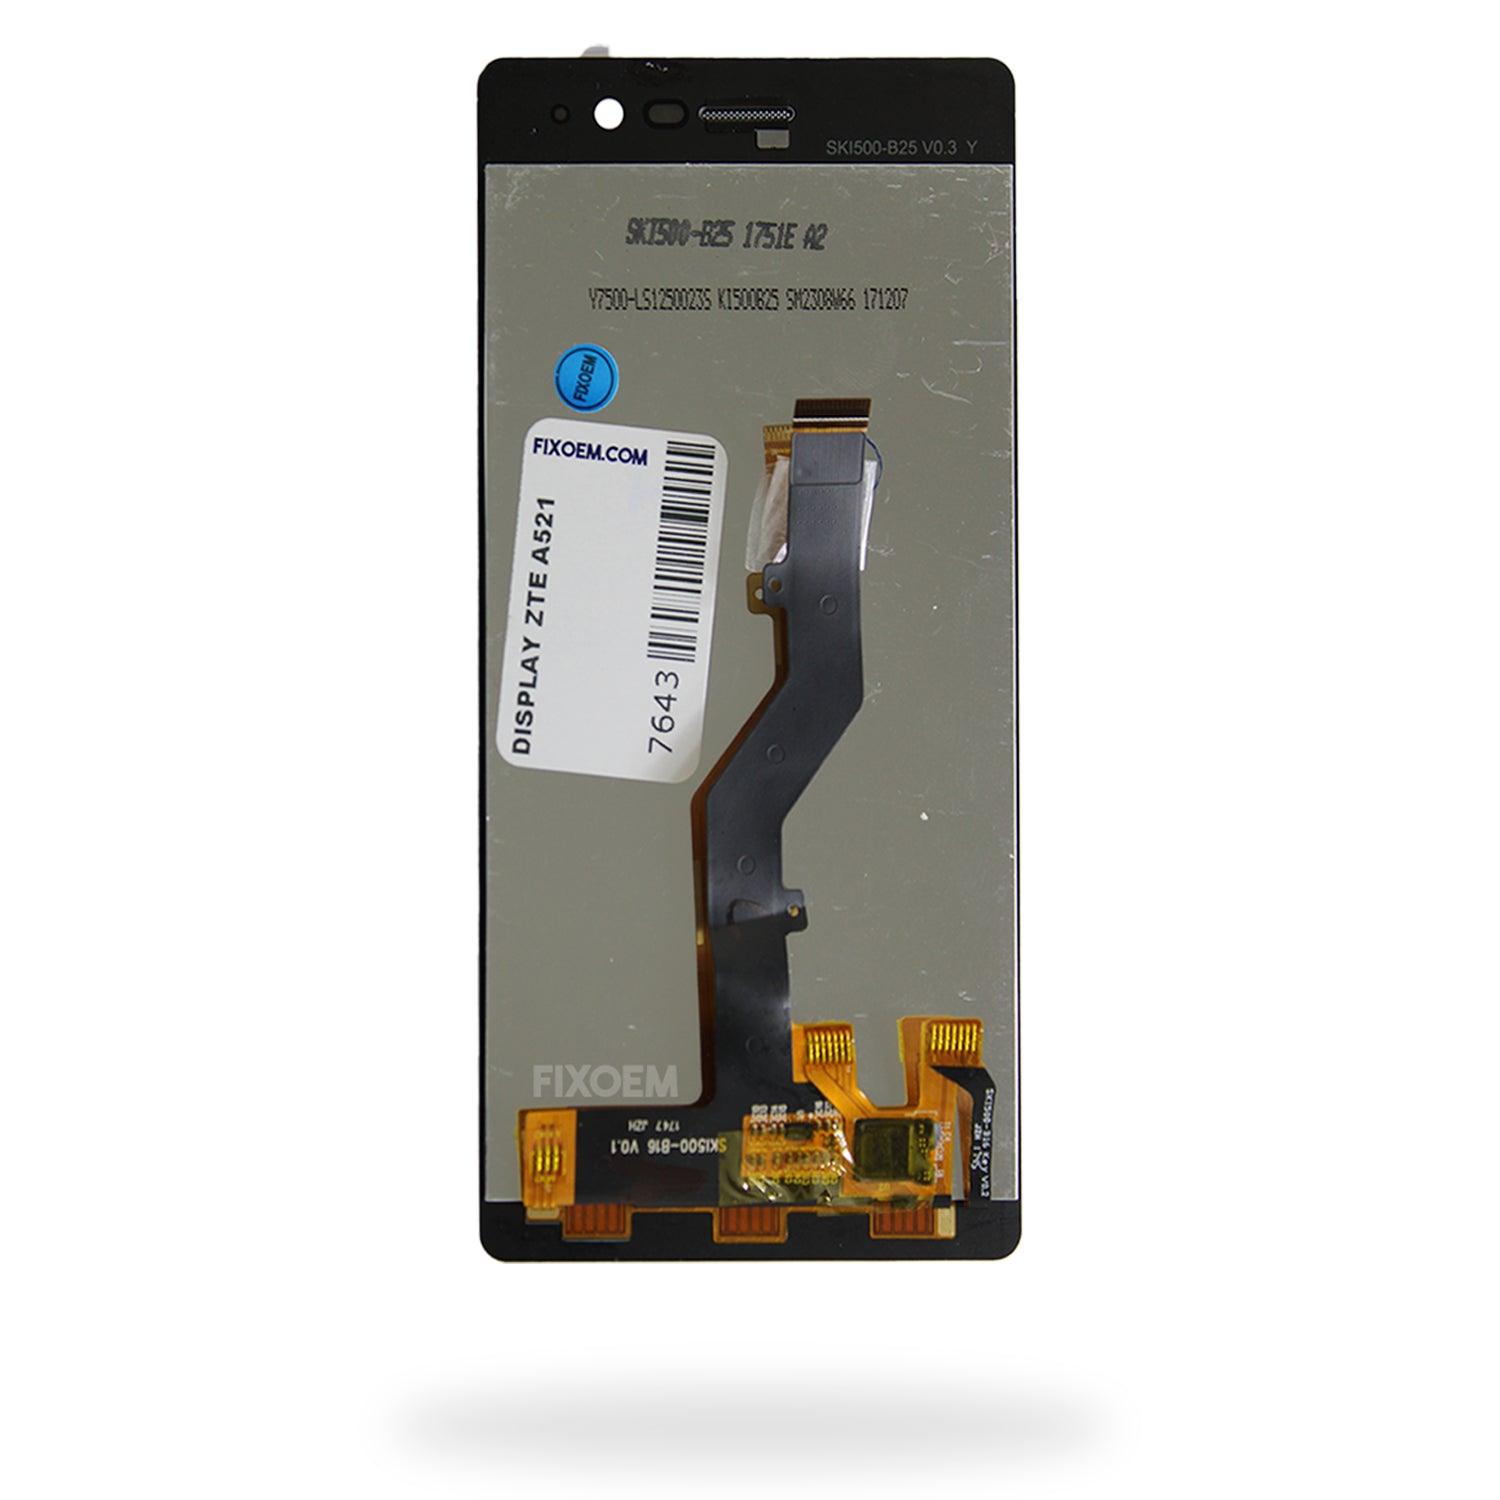 Display Zte Blade A6 IPS a solo $ 350.00 Refaccion y puestos celulares, refurbish y microelectronica.- FixOEM